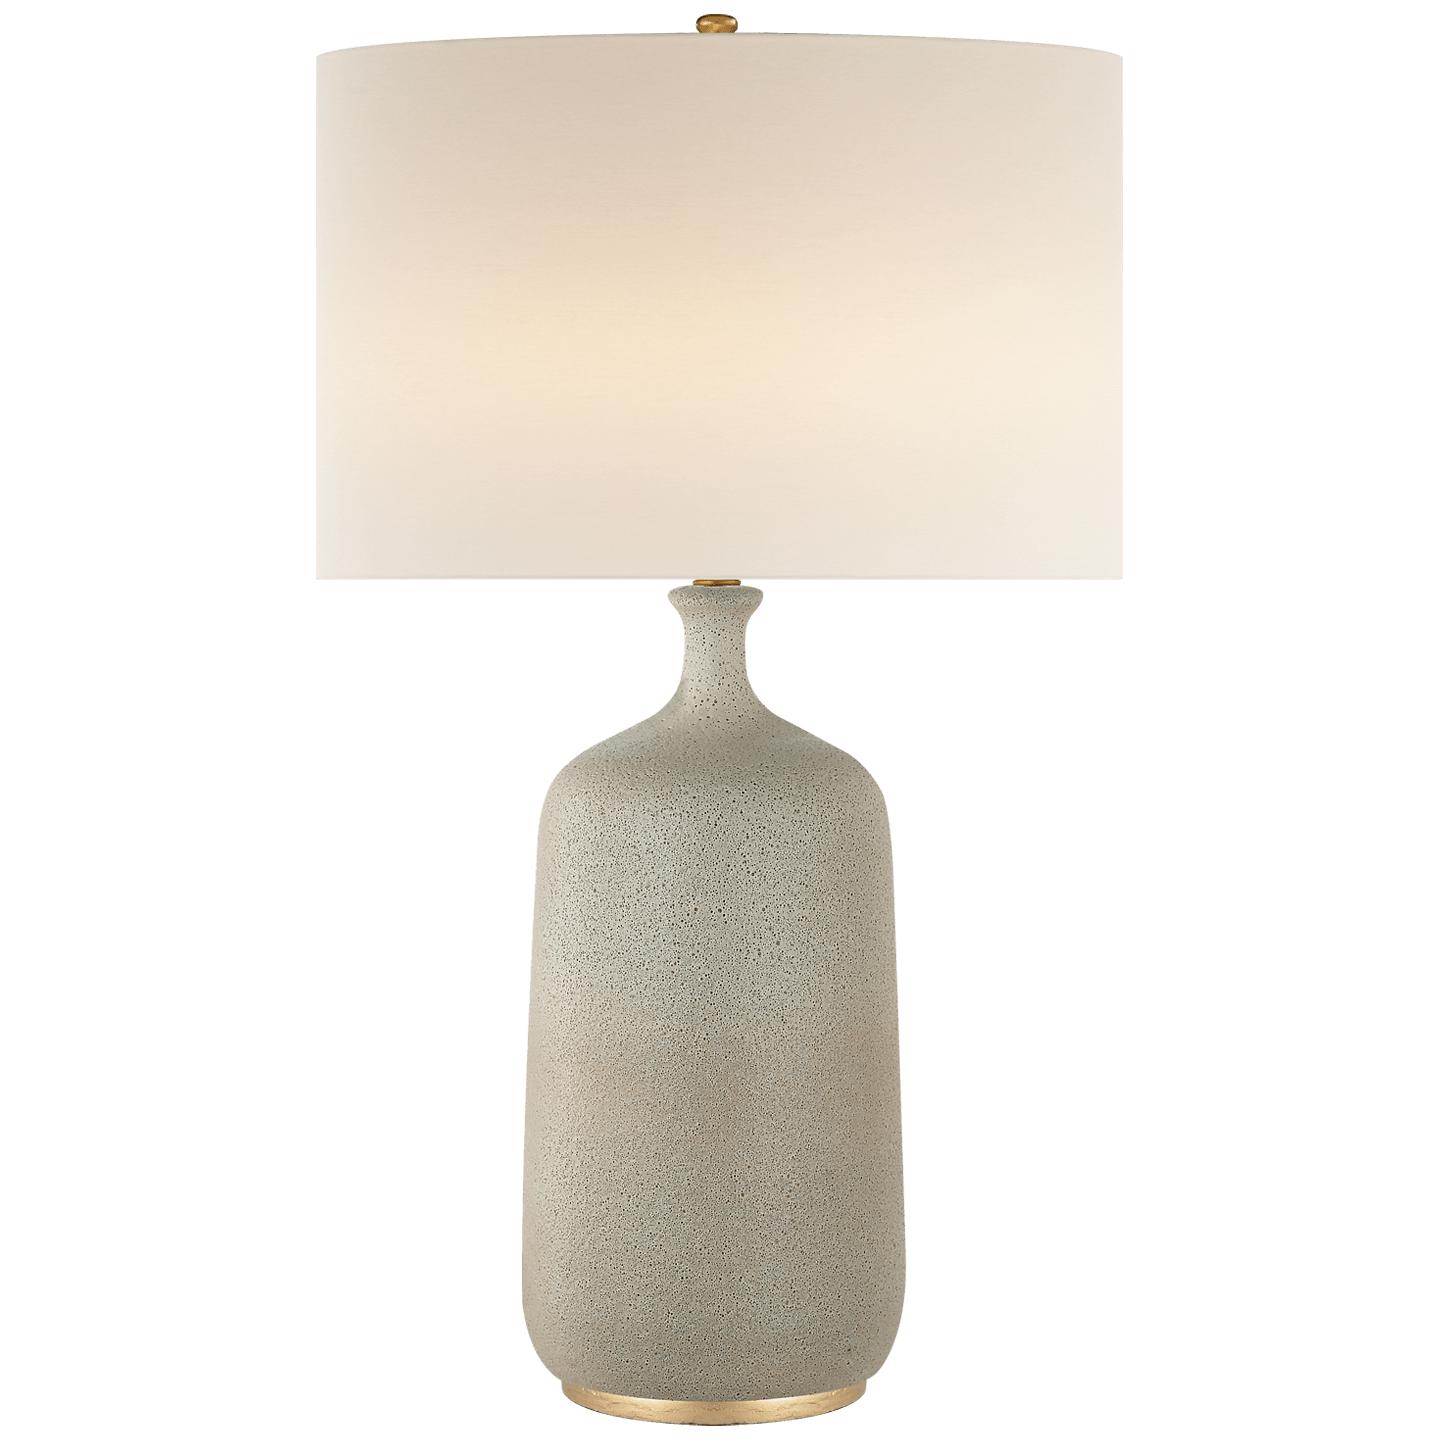 Купить Настольная лампа Culloden Table Lamp в интернет-магазине roooms.ru